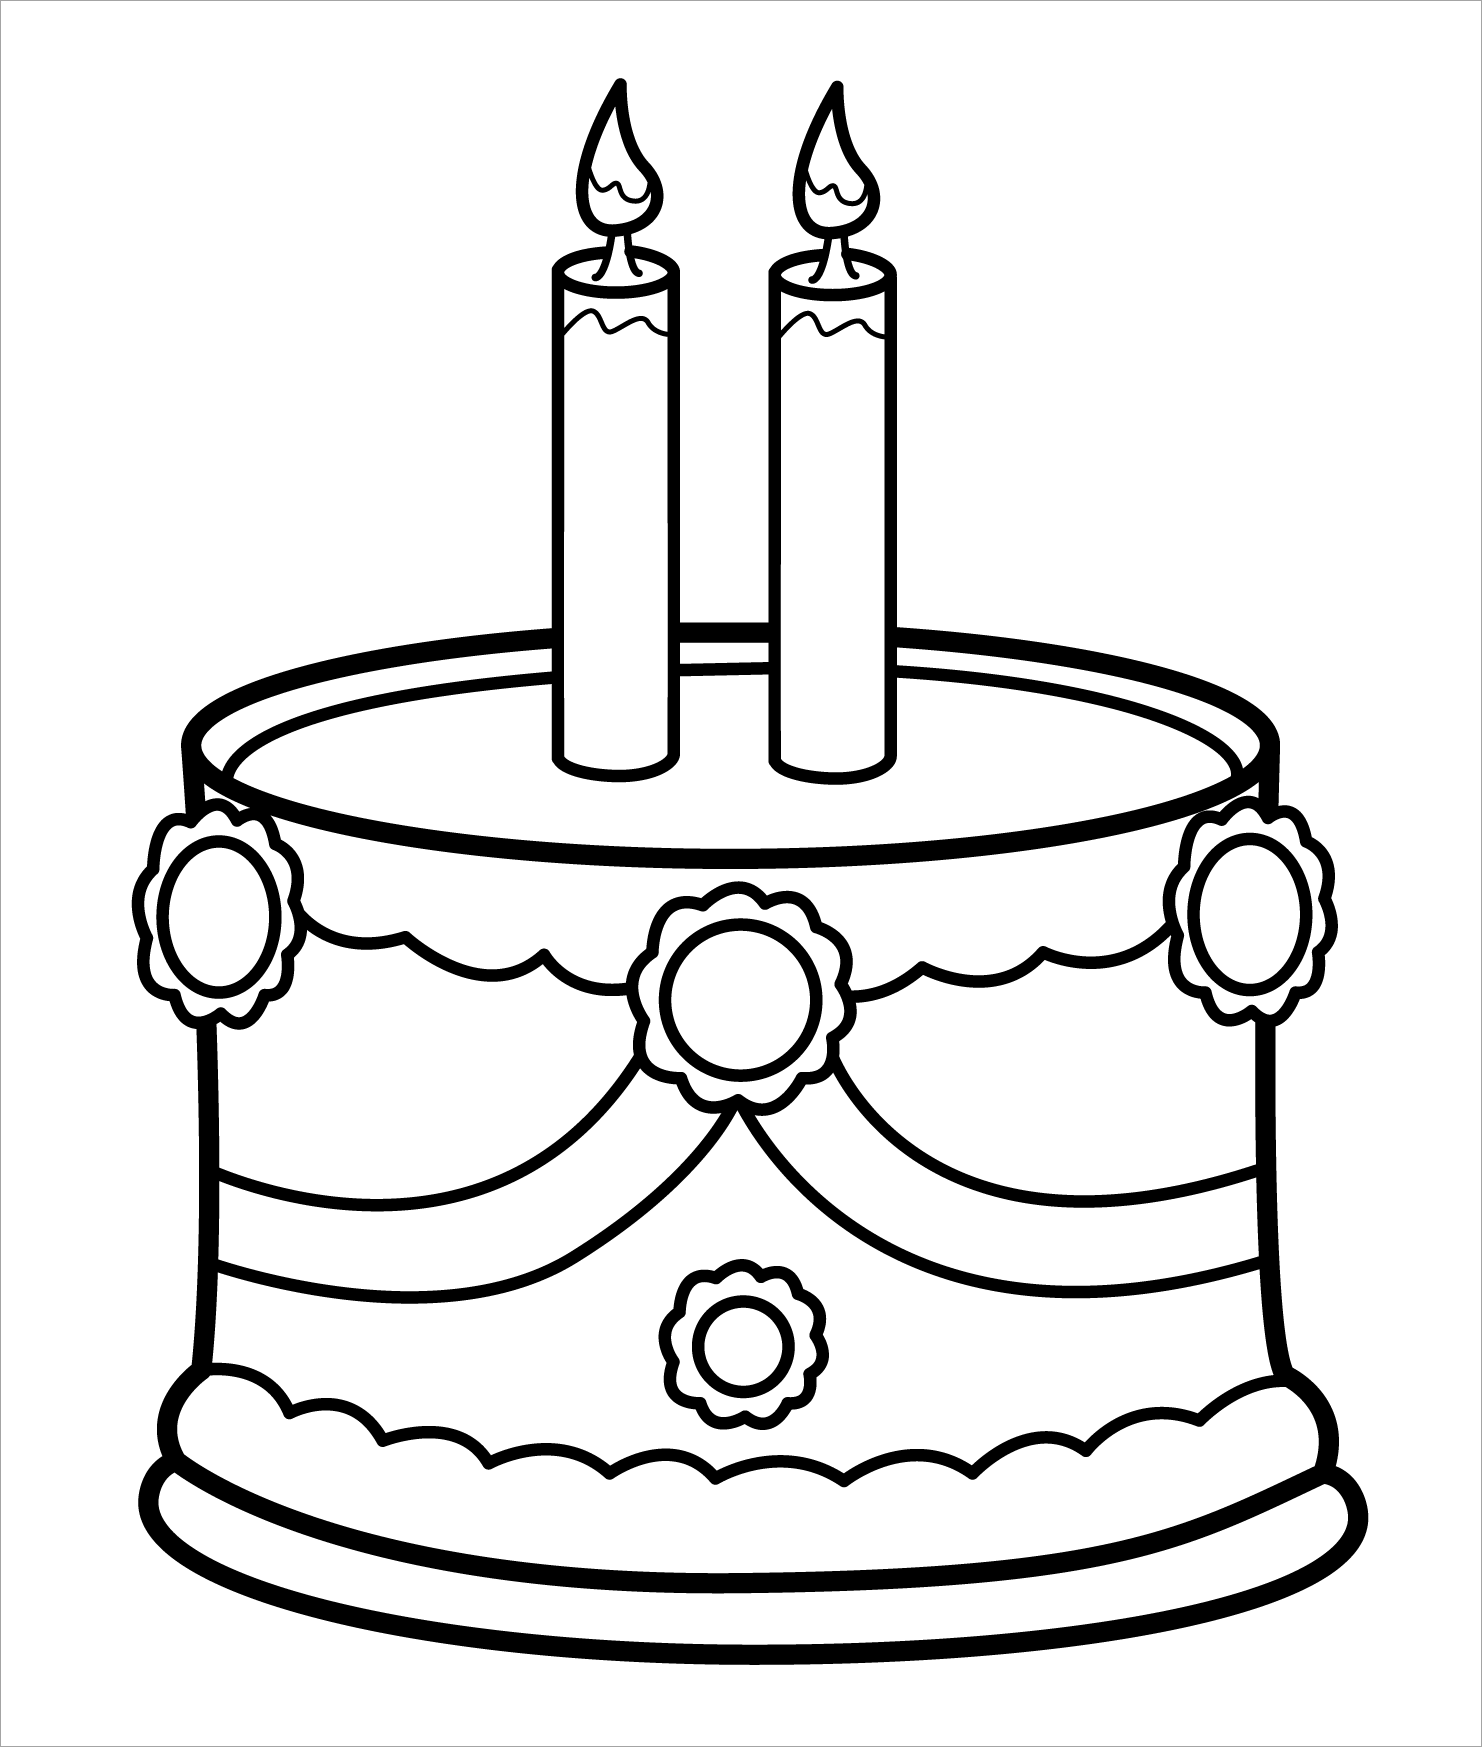 27 Tranh tô màu bánh kem sinh nhật vui vẻ cho trẻ | Bánh, Bánh sinh nhật, Sinh  nhật